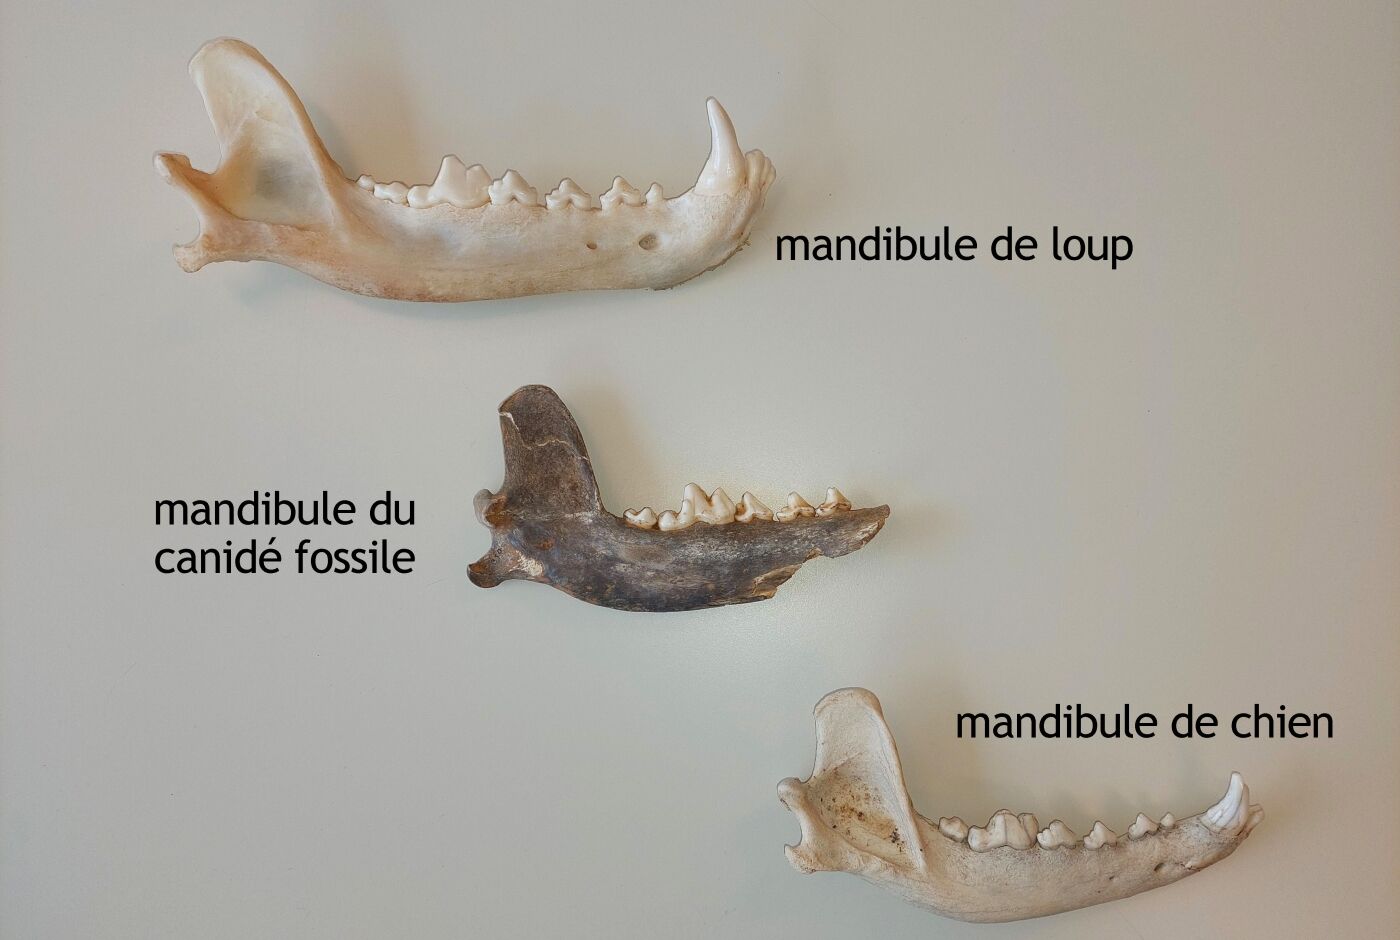 web_comparaison-entre-2-mandibules-modernes-et-la-mandibule-fossile_mr.jpg